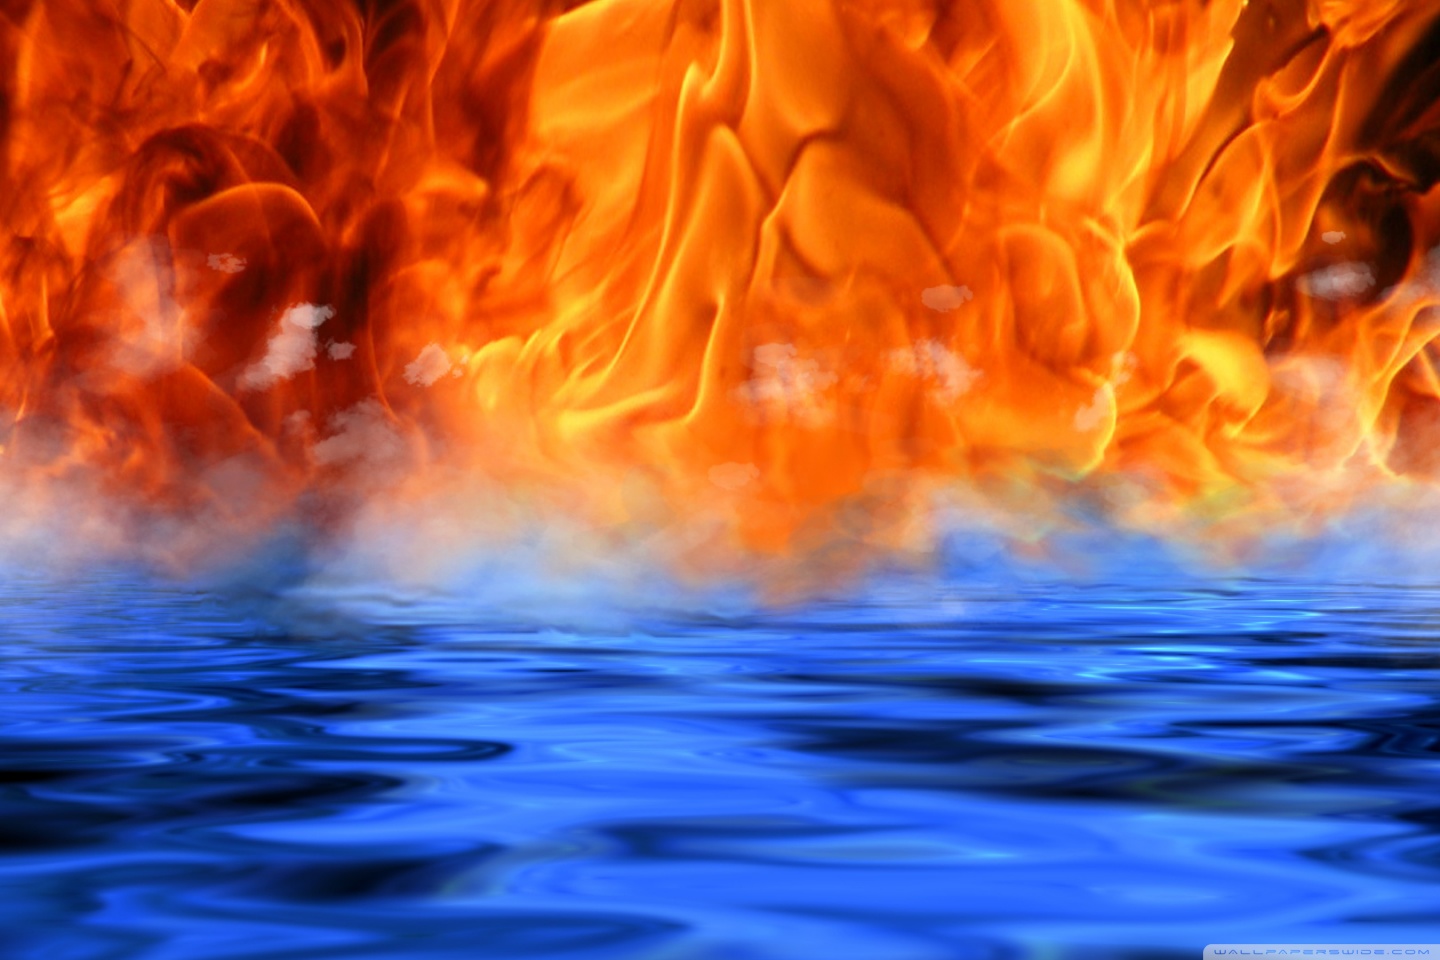 Fire - Water - Meet HD desktop wallpaper : Widescreen : High ...